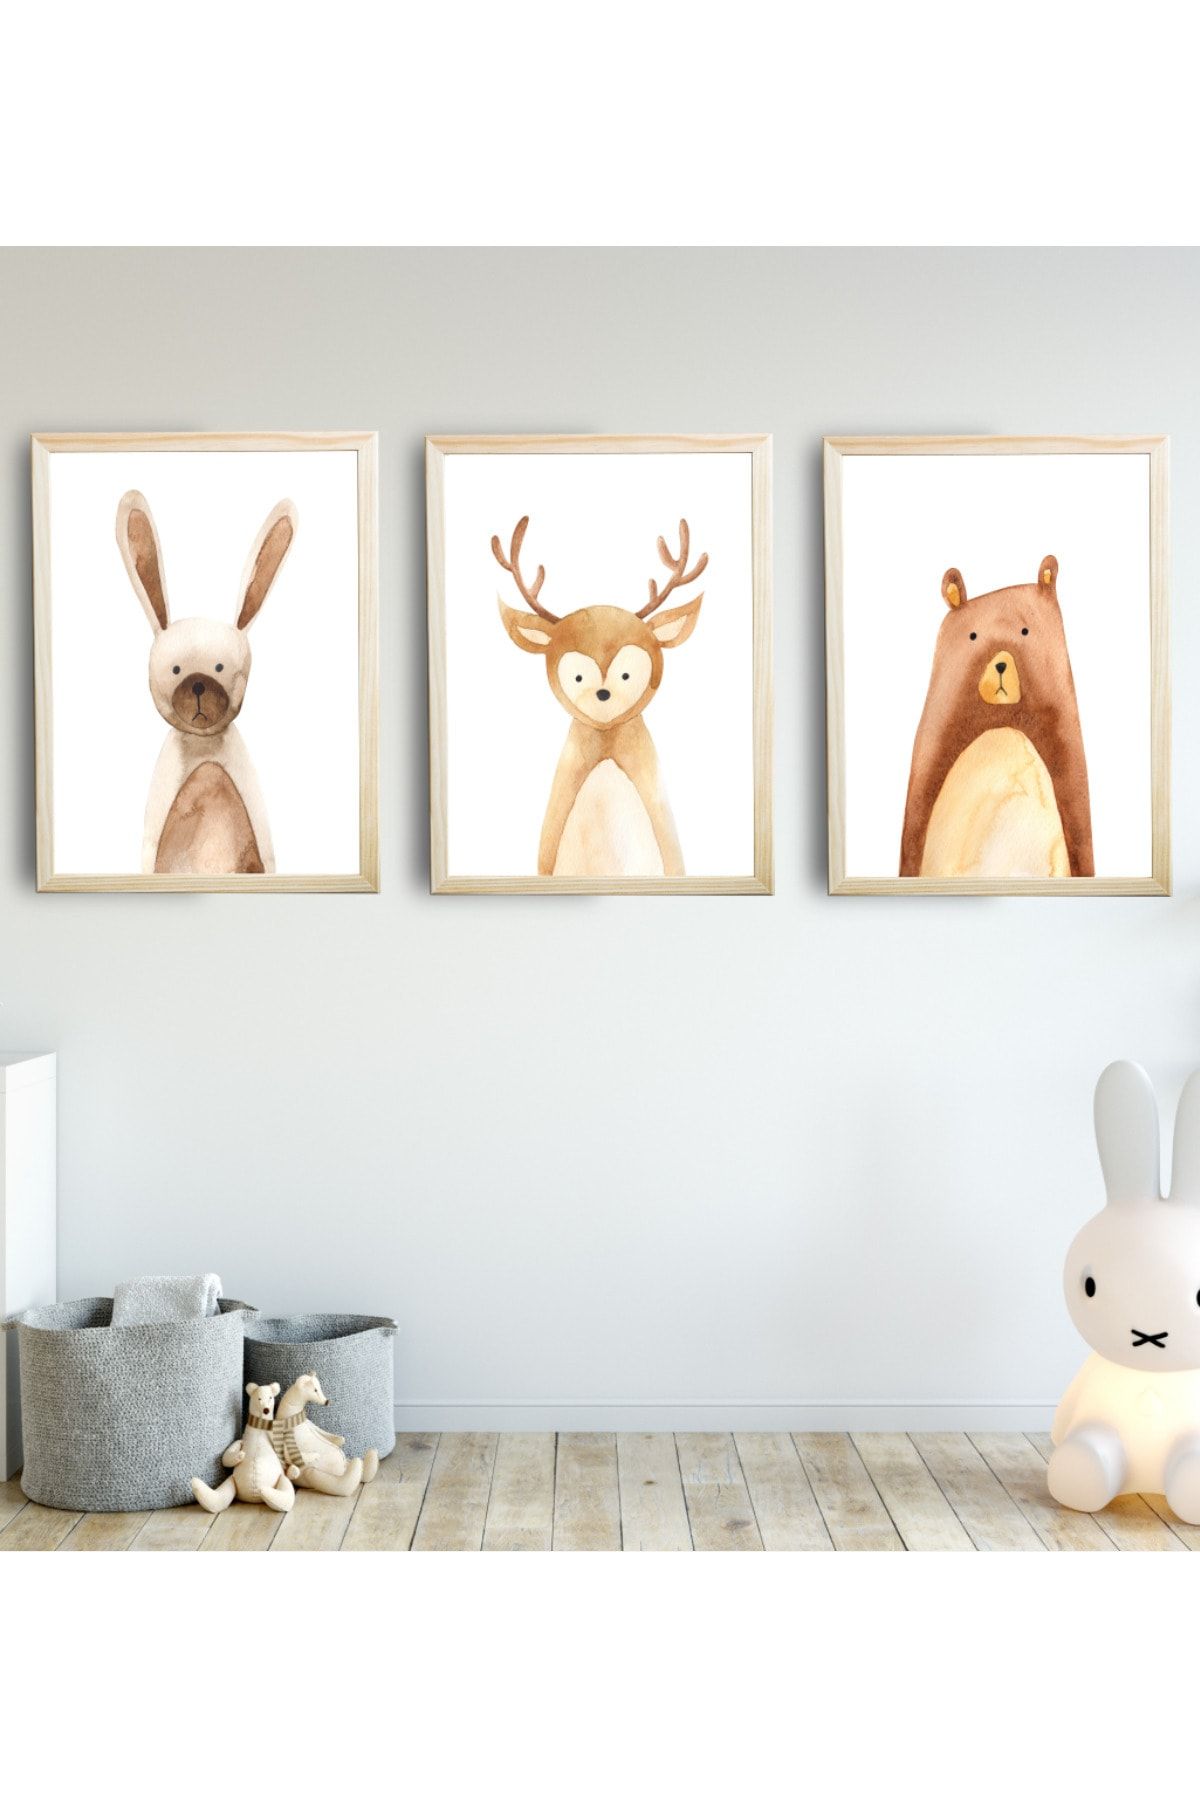 SUNNYFUNNYKIDS Bebek Çocuk Odası Tablo Tavşan Ayı Geyik 3'lü Naturel Renk Doğal Ahşap Çerçeveli Set 21x30 Cm